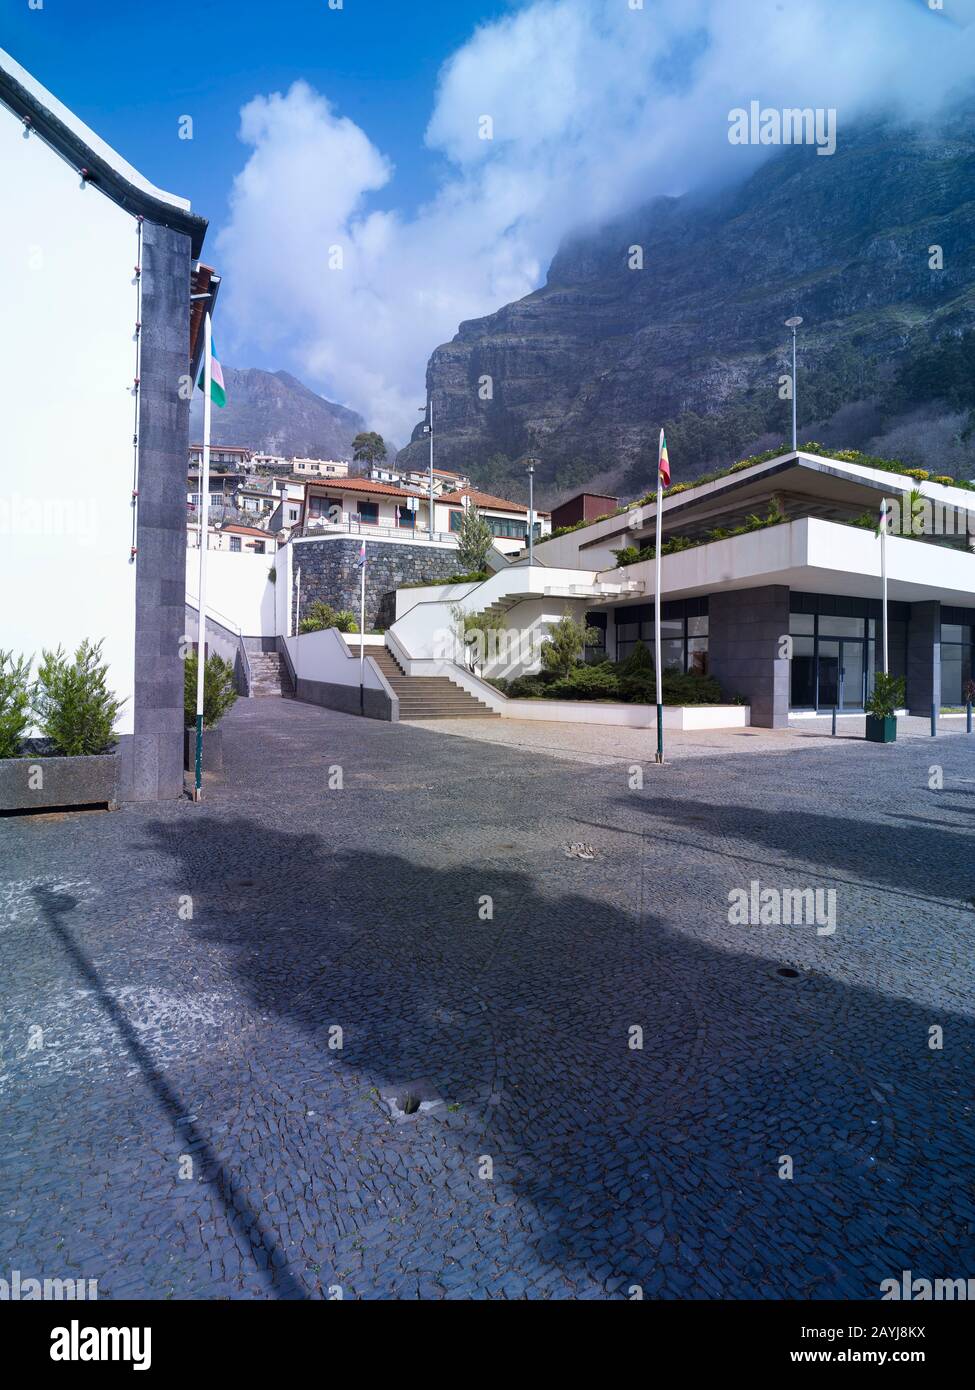 Bibliothek im zentralen Bereich des Nonnentalbereichs auf der Ferieninsel Madeira, Portugal, Europäische Union Stockfoto